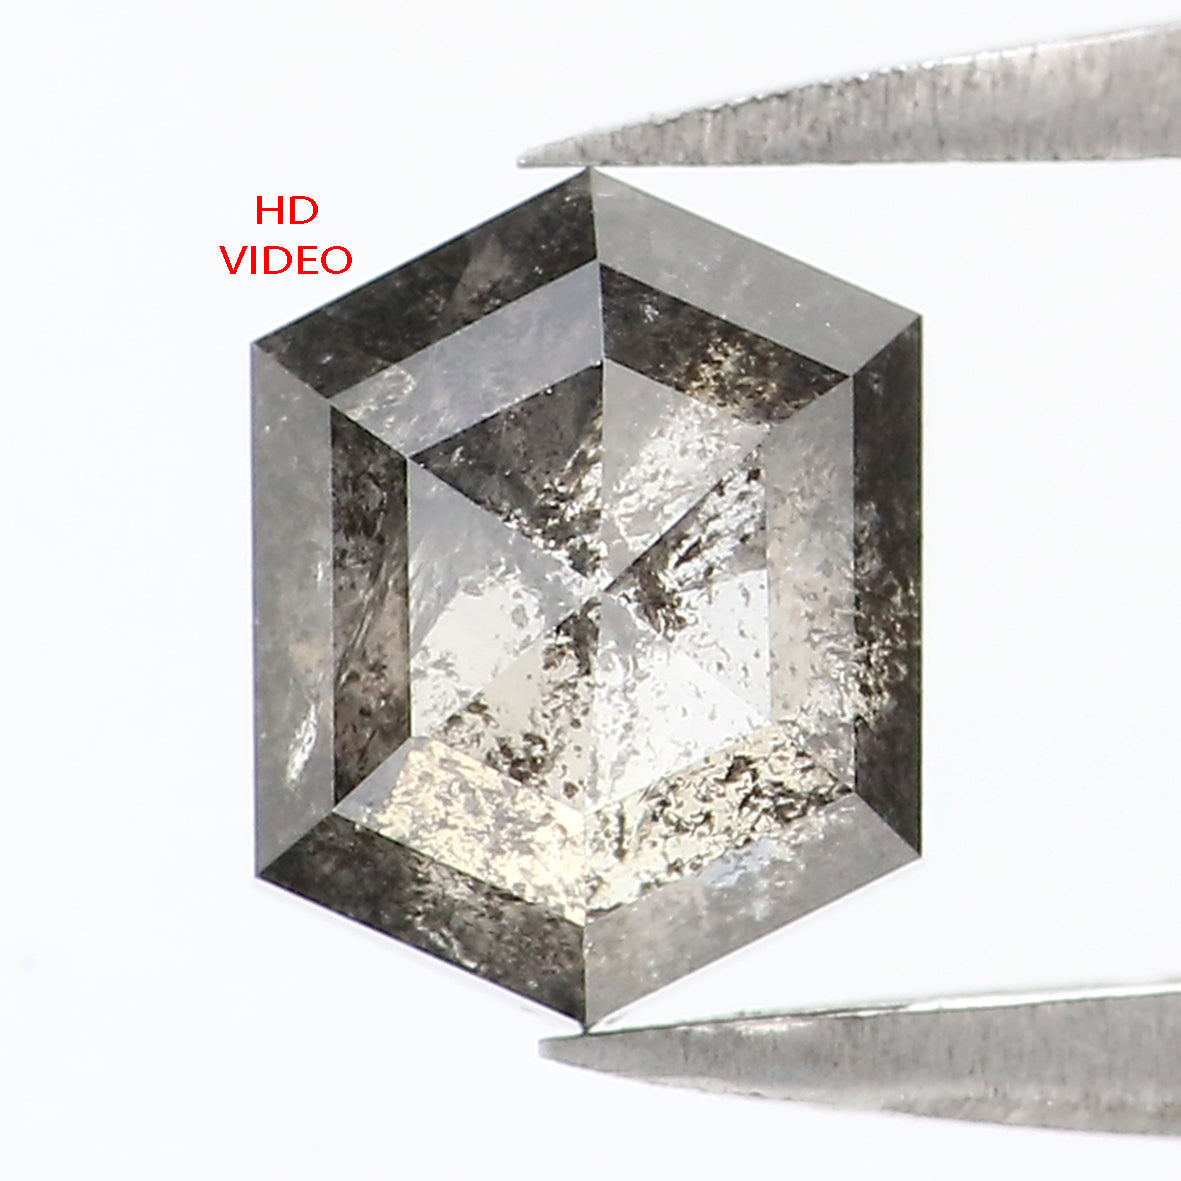 1.21 CT Natural Loose Hexagon Cut Diamond Salt And Pepper Hexagon Diamond 6.85 MM Natural Loose Black Grey Color Hexagon Cut Diamond QL1531